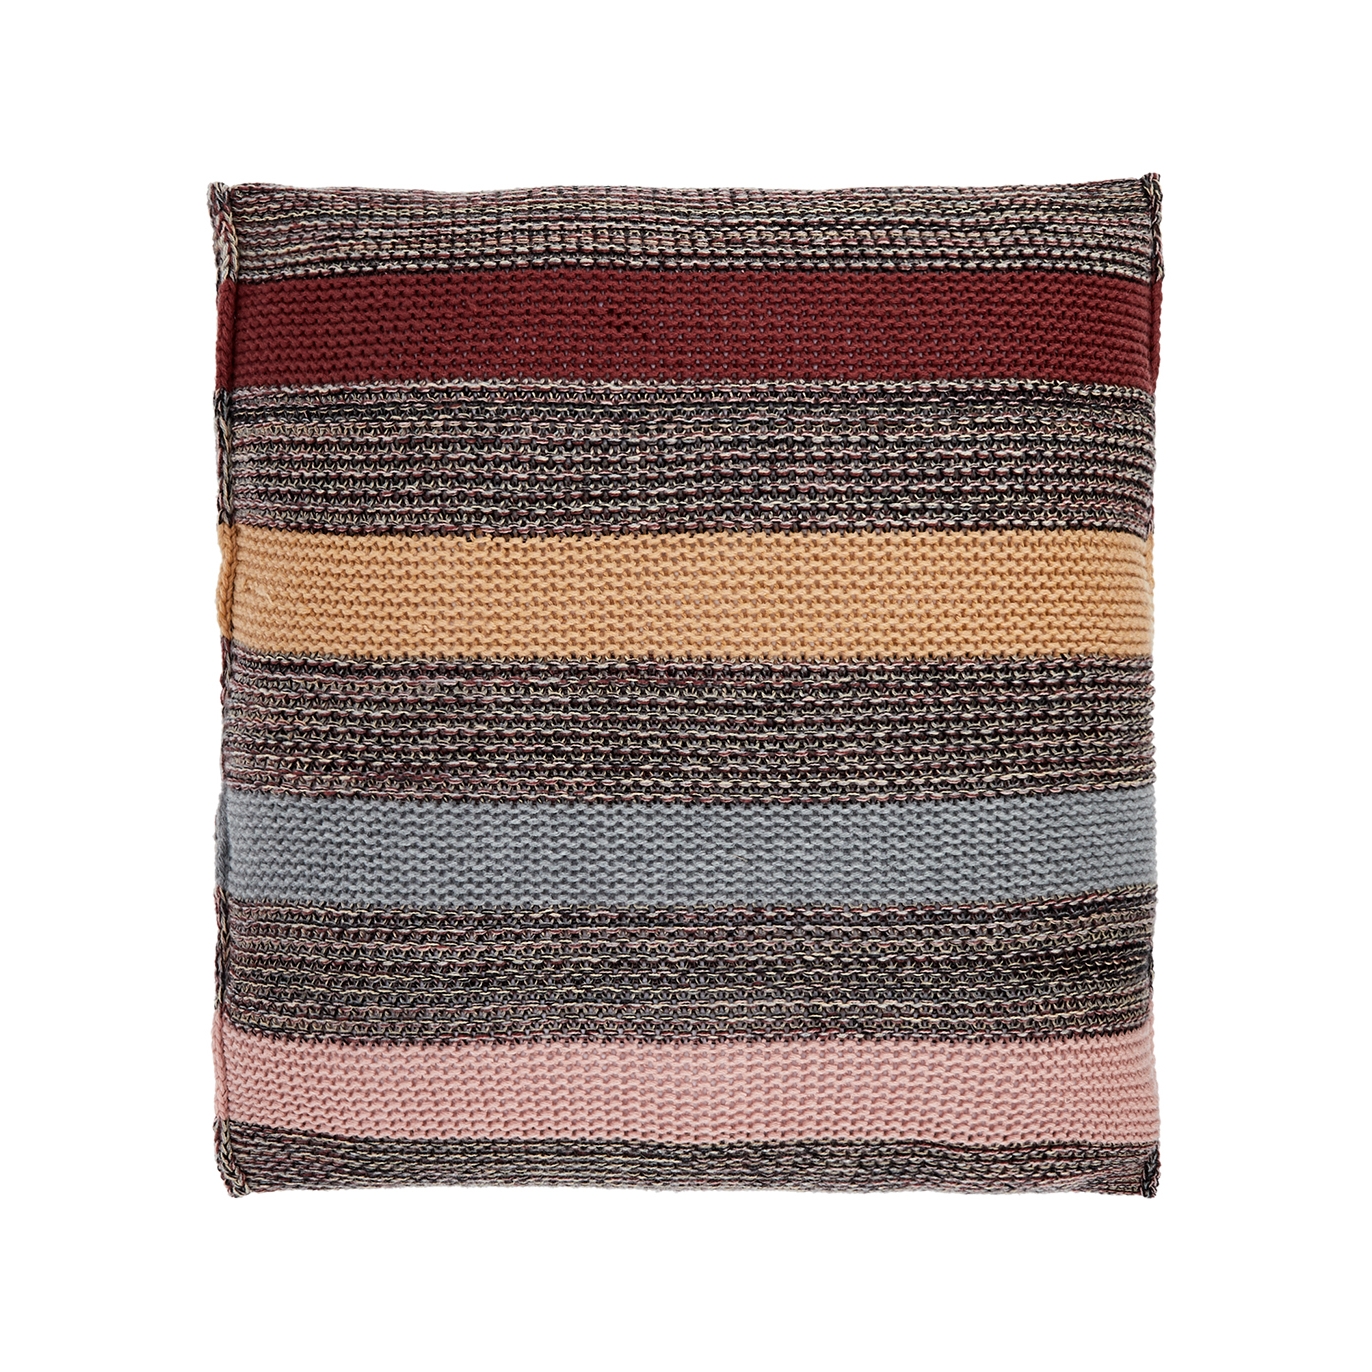 Inverni Striped Cashmere Square Pillow - Brown - One Size